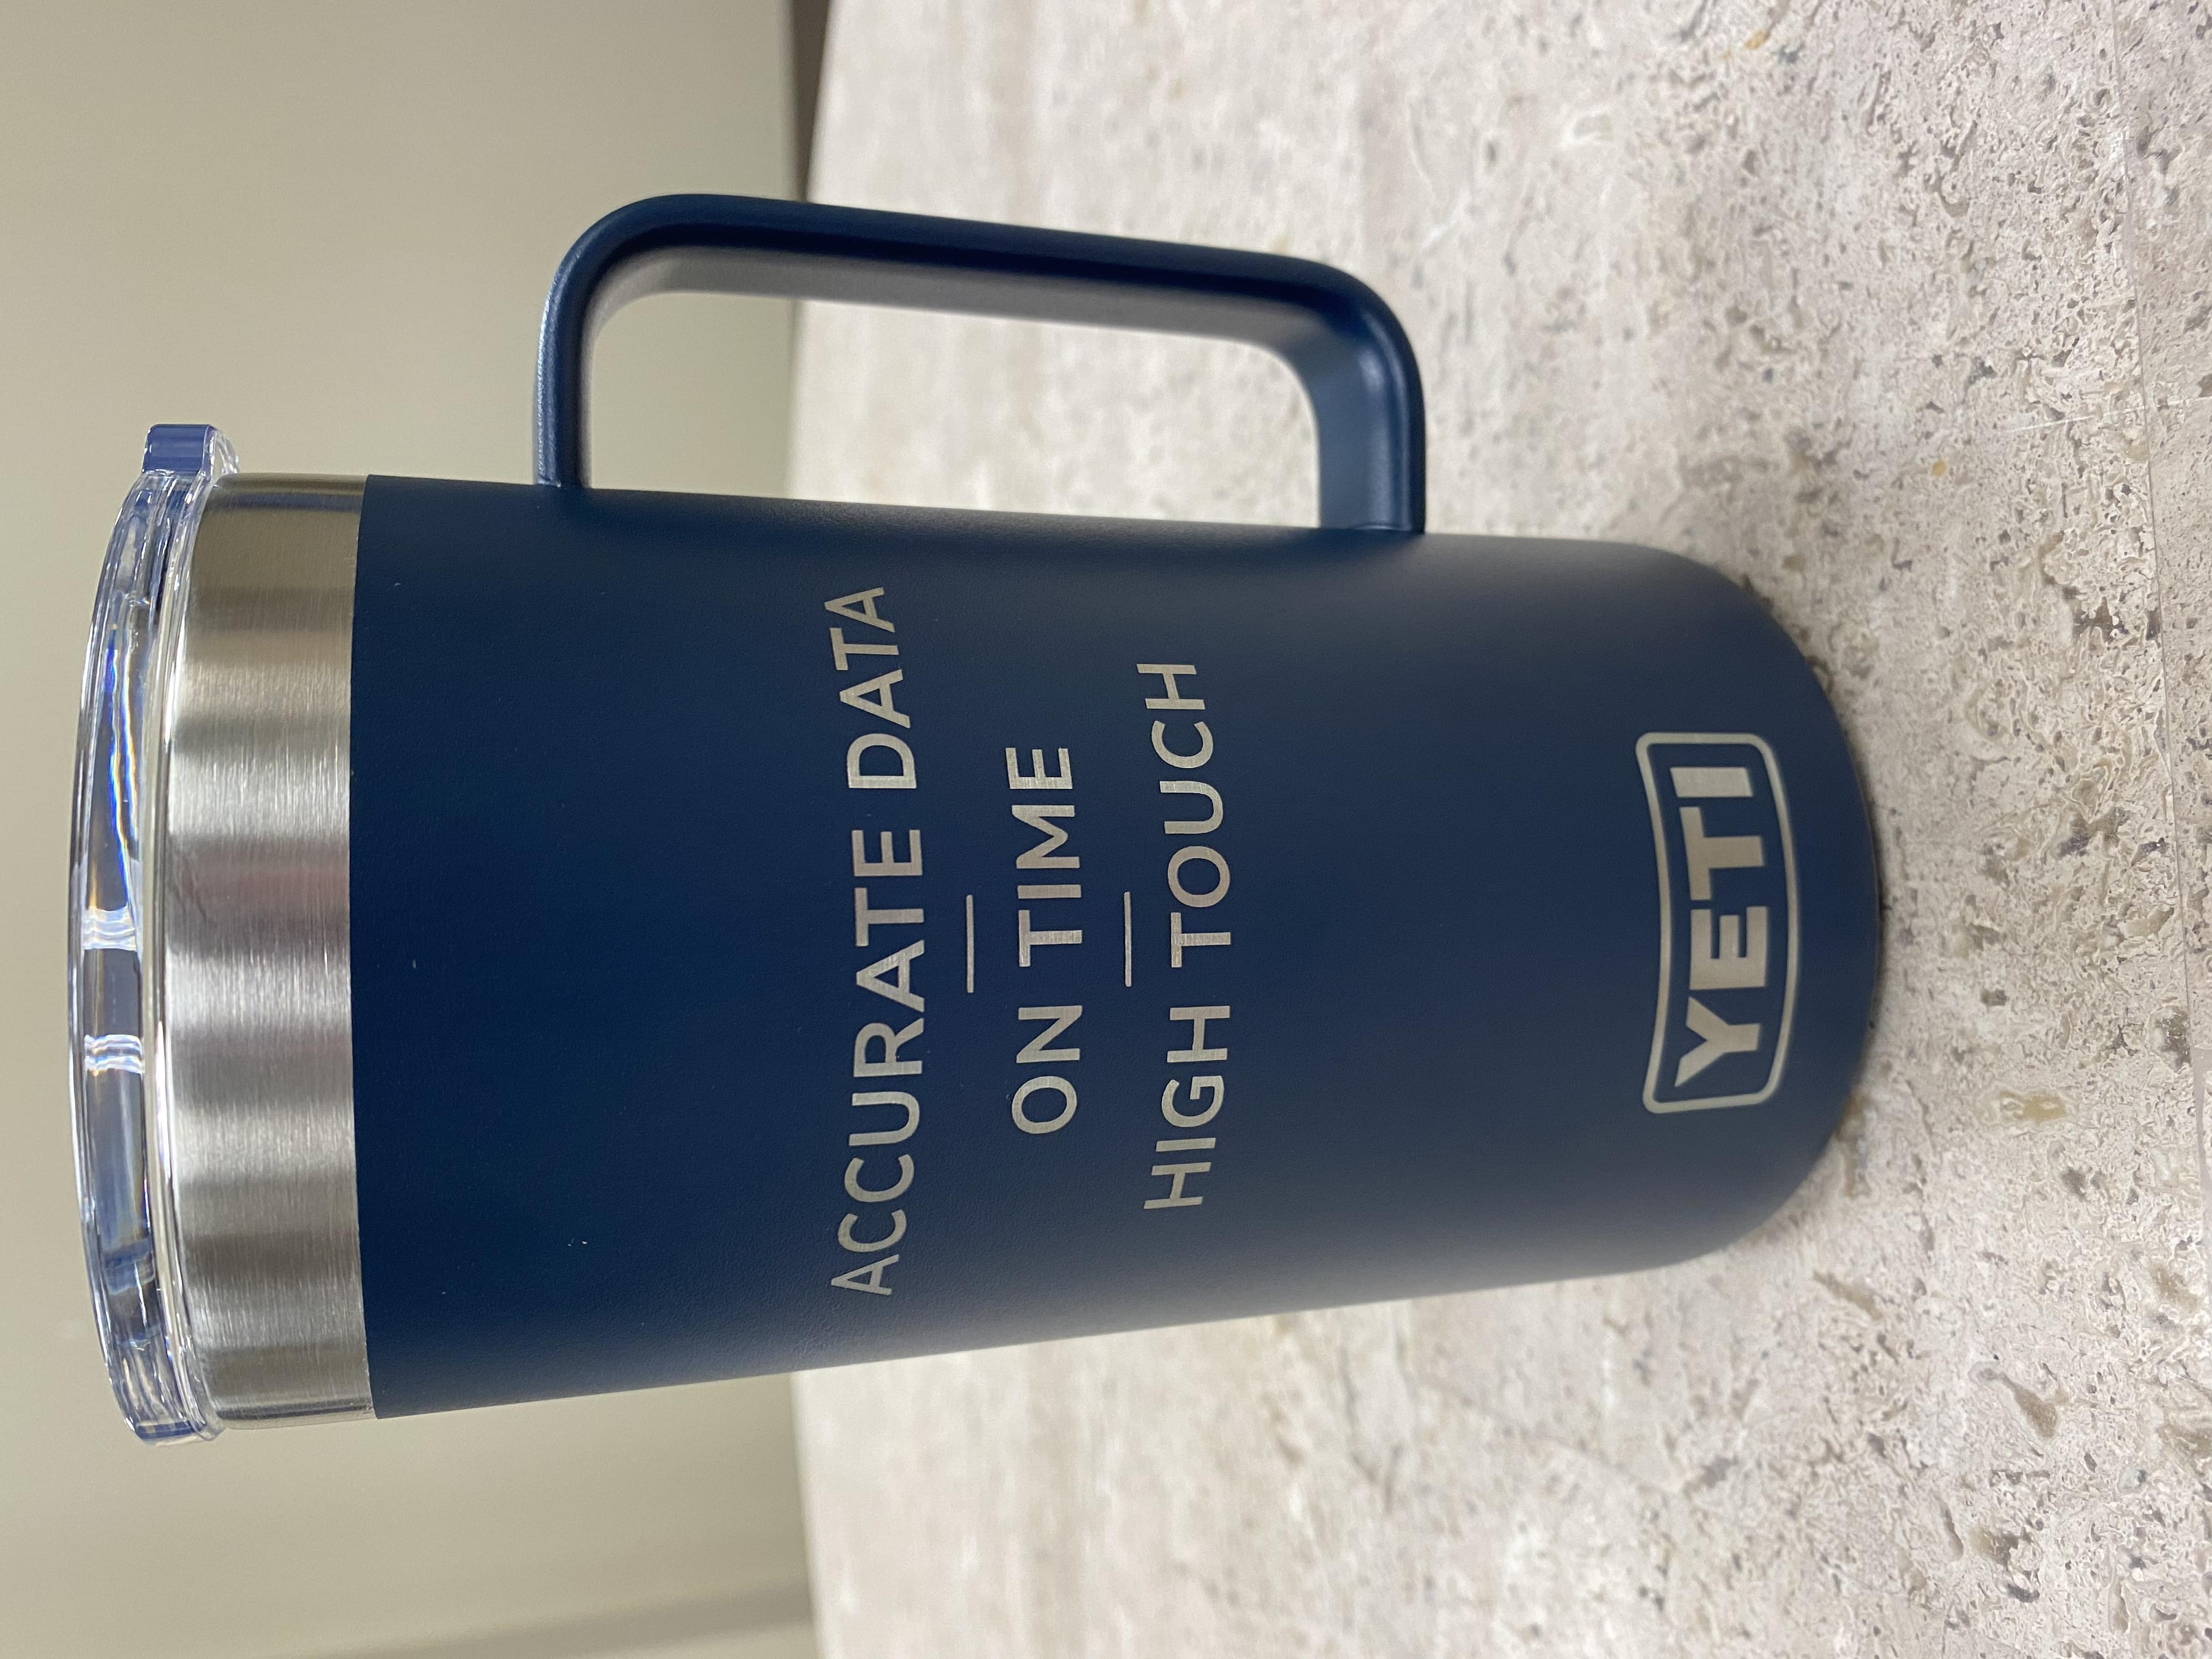 Smithers slogan on navy blue Yeti mug